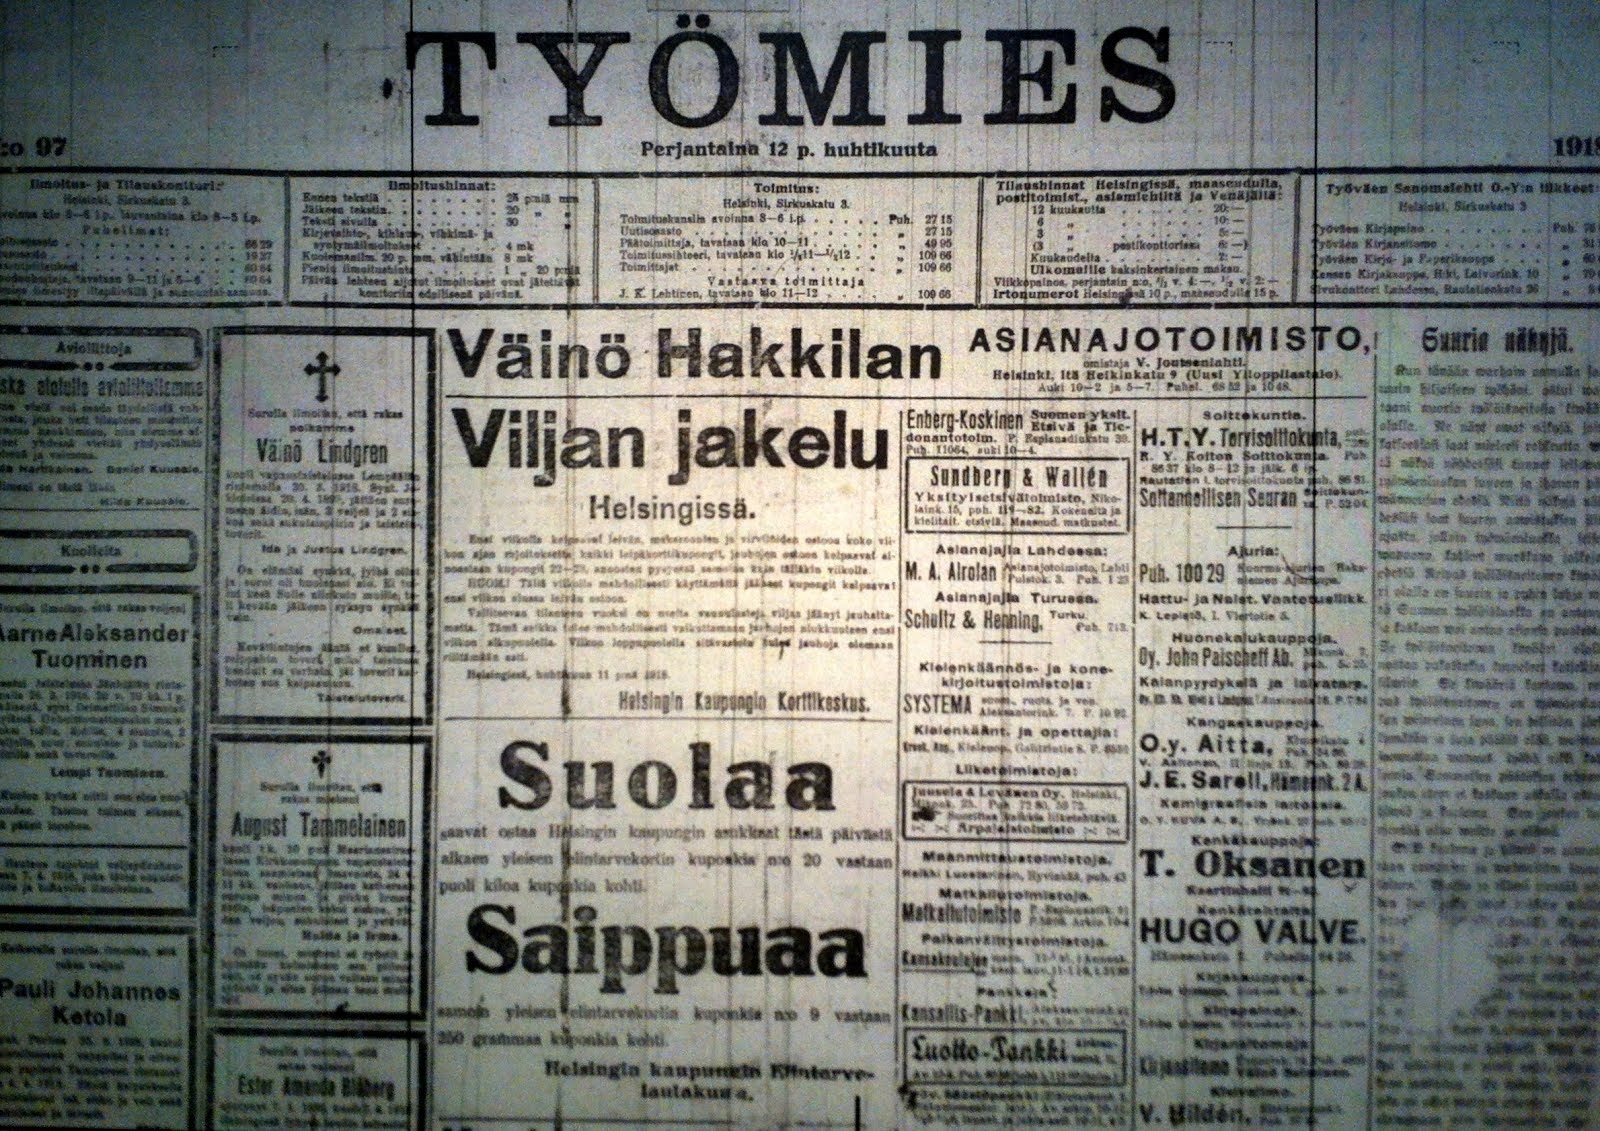 Työmies 12.4.1918 lehden viimeinen numero